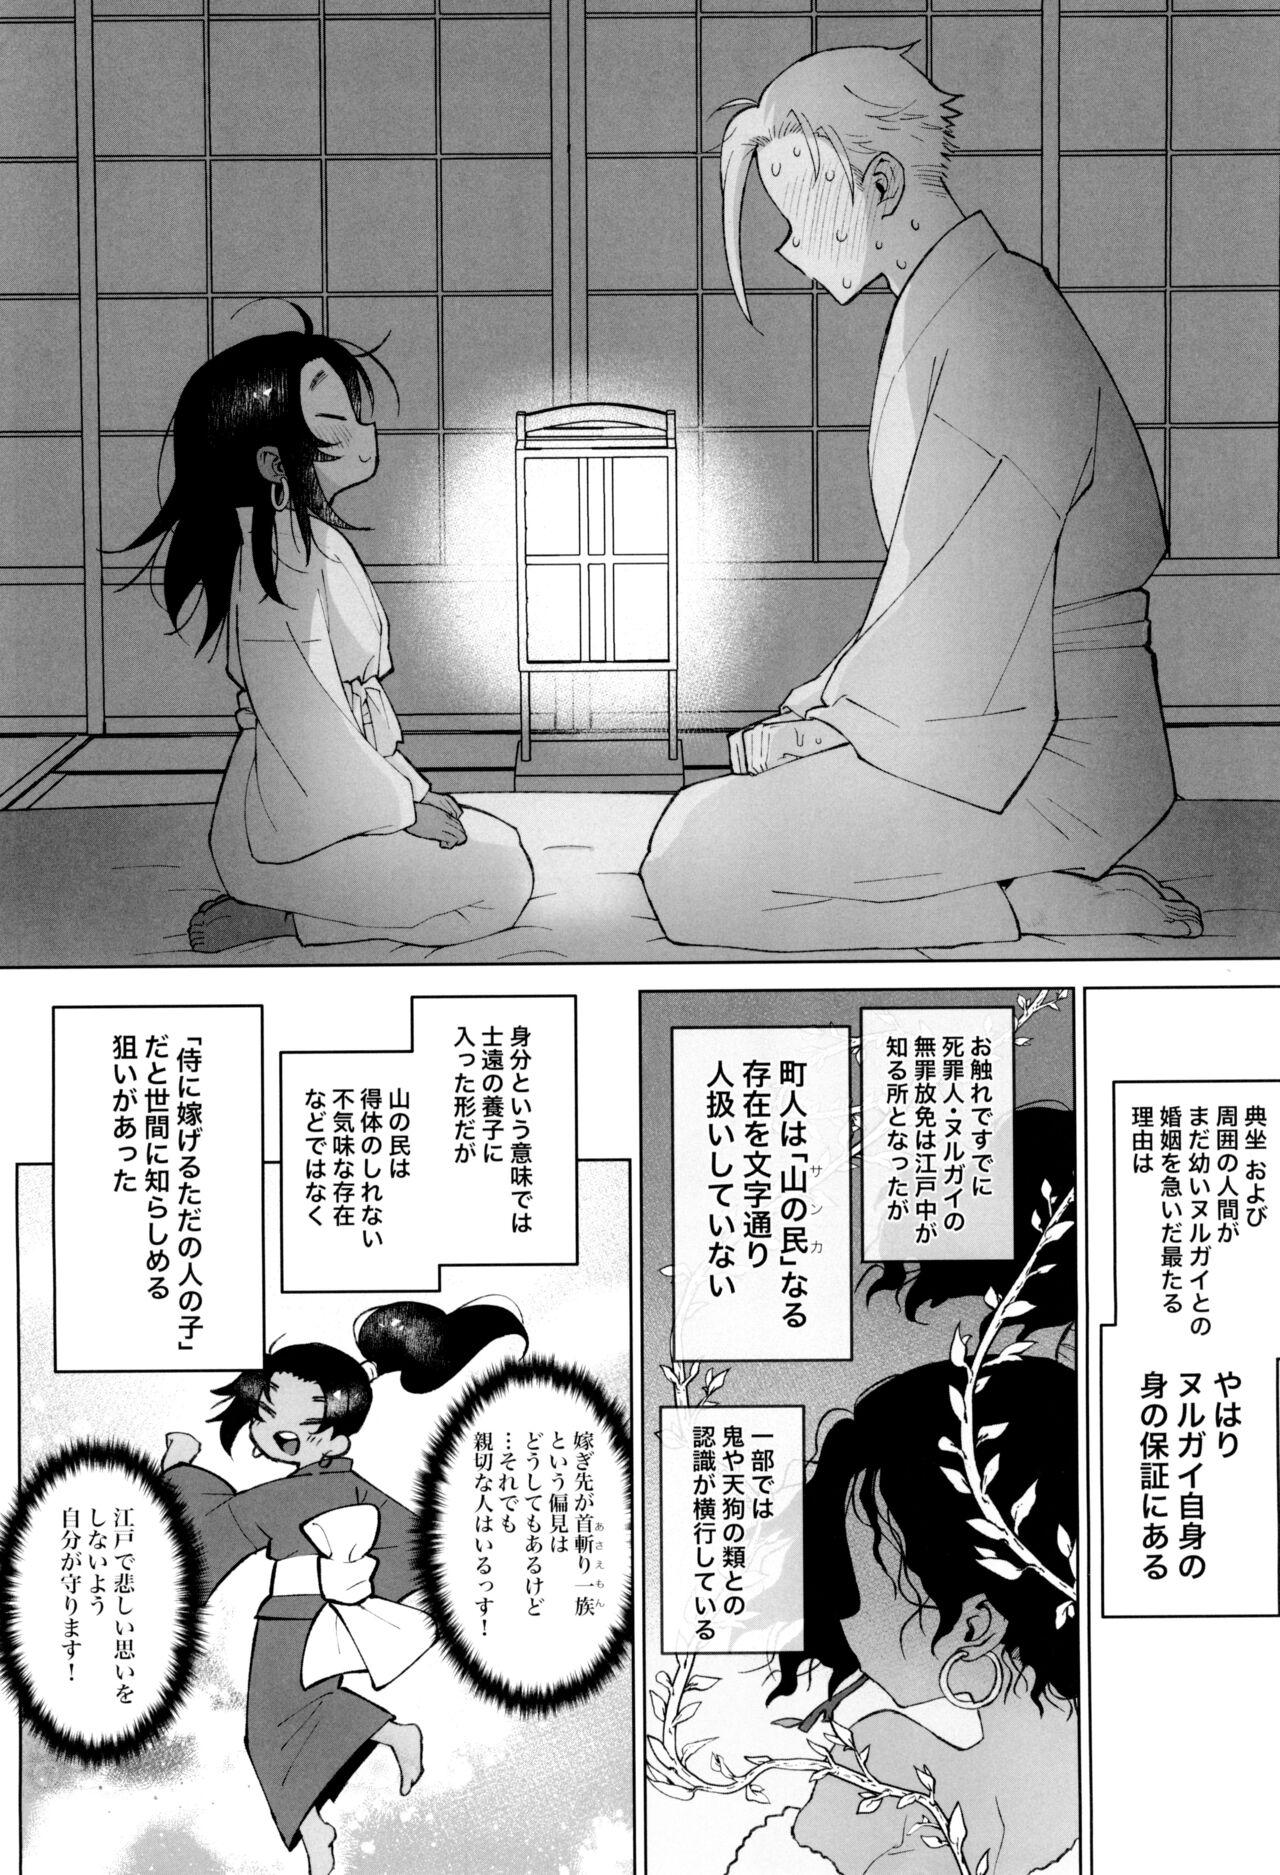 Puto Edo to Yousai - Jigokuraku Gayemo - Page 8